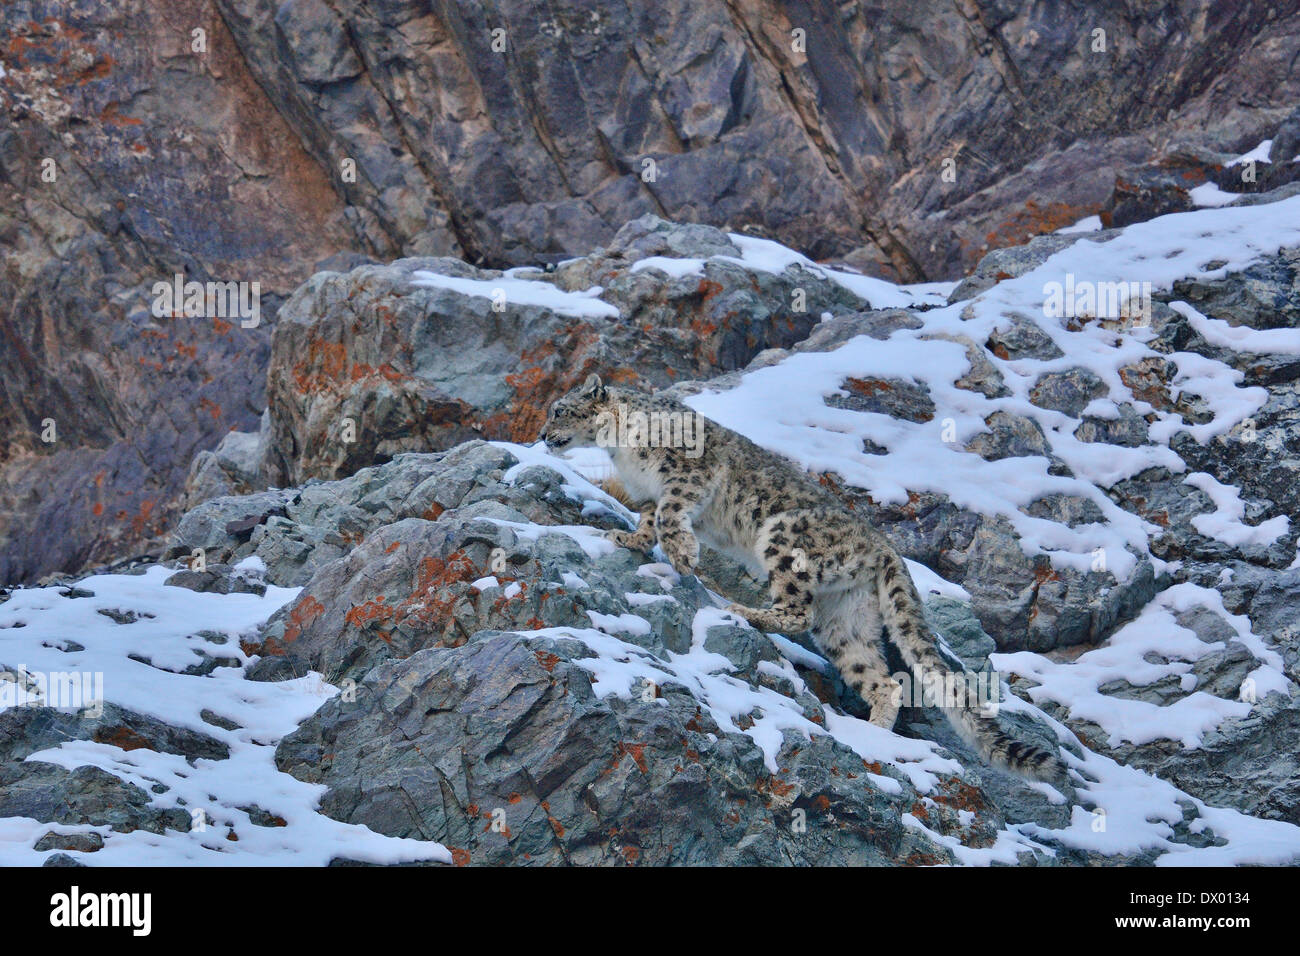 Snow Leopard (Panthera uncia o Uncia uncia) passeggiate sui pendii rocciosi in Hemis national park, Ladakh, India Foto Stock